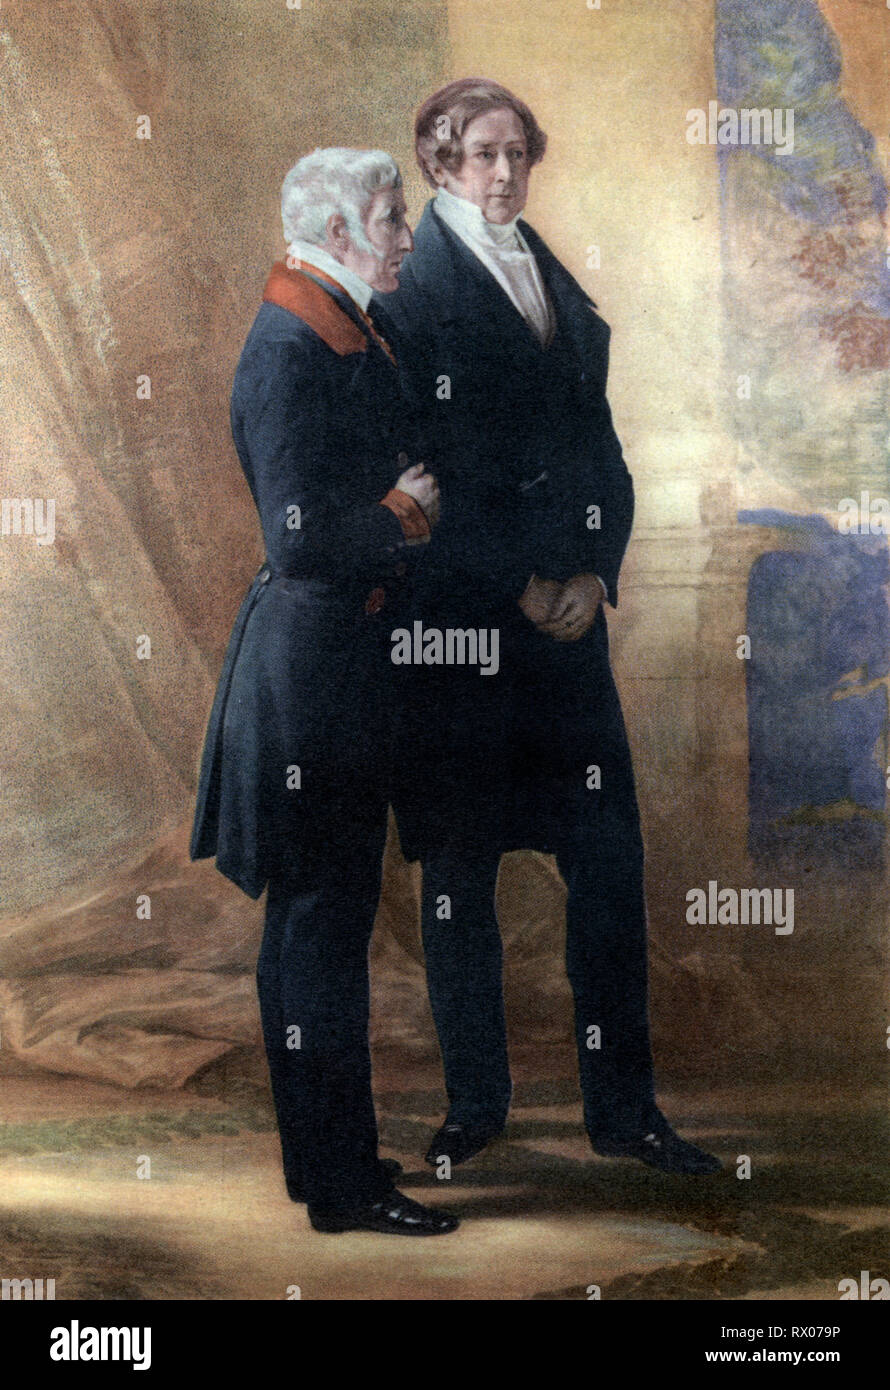 Le duc de Wellington et sir Robert Peel, 1851. Après Franz Xaver Winterhalter (1805-1873). Le gouvernement conservateur du Royaume-Uni de Grande-Bretagne et d'Irlande, qui a commencé en 1828 et s'est terminé en 1830, a été dirigé par le duc de Wellington à la Chambre des Lords et par Robert Peel à la Chambre des communes. Banque D'Images